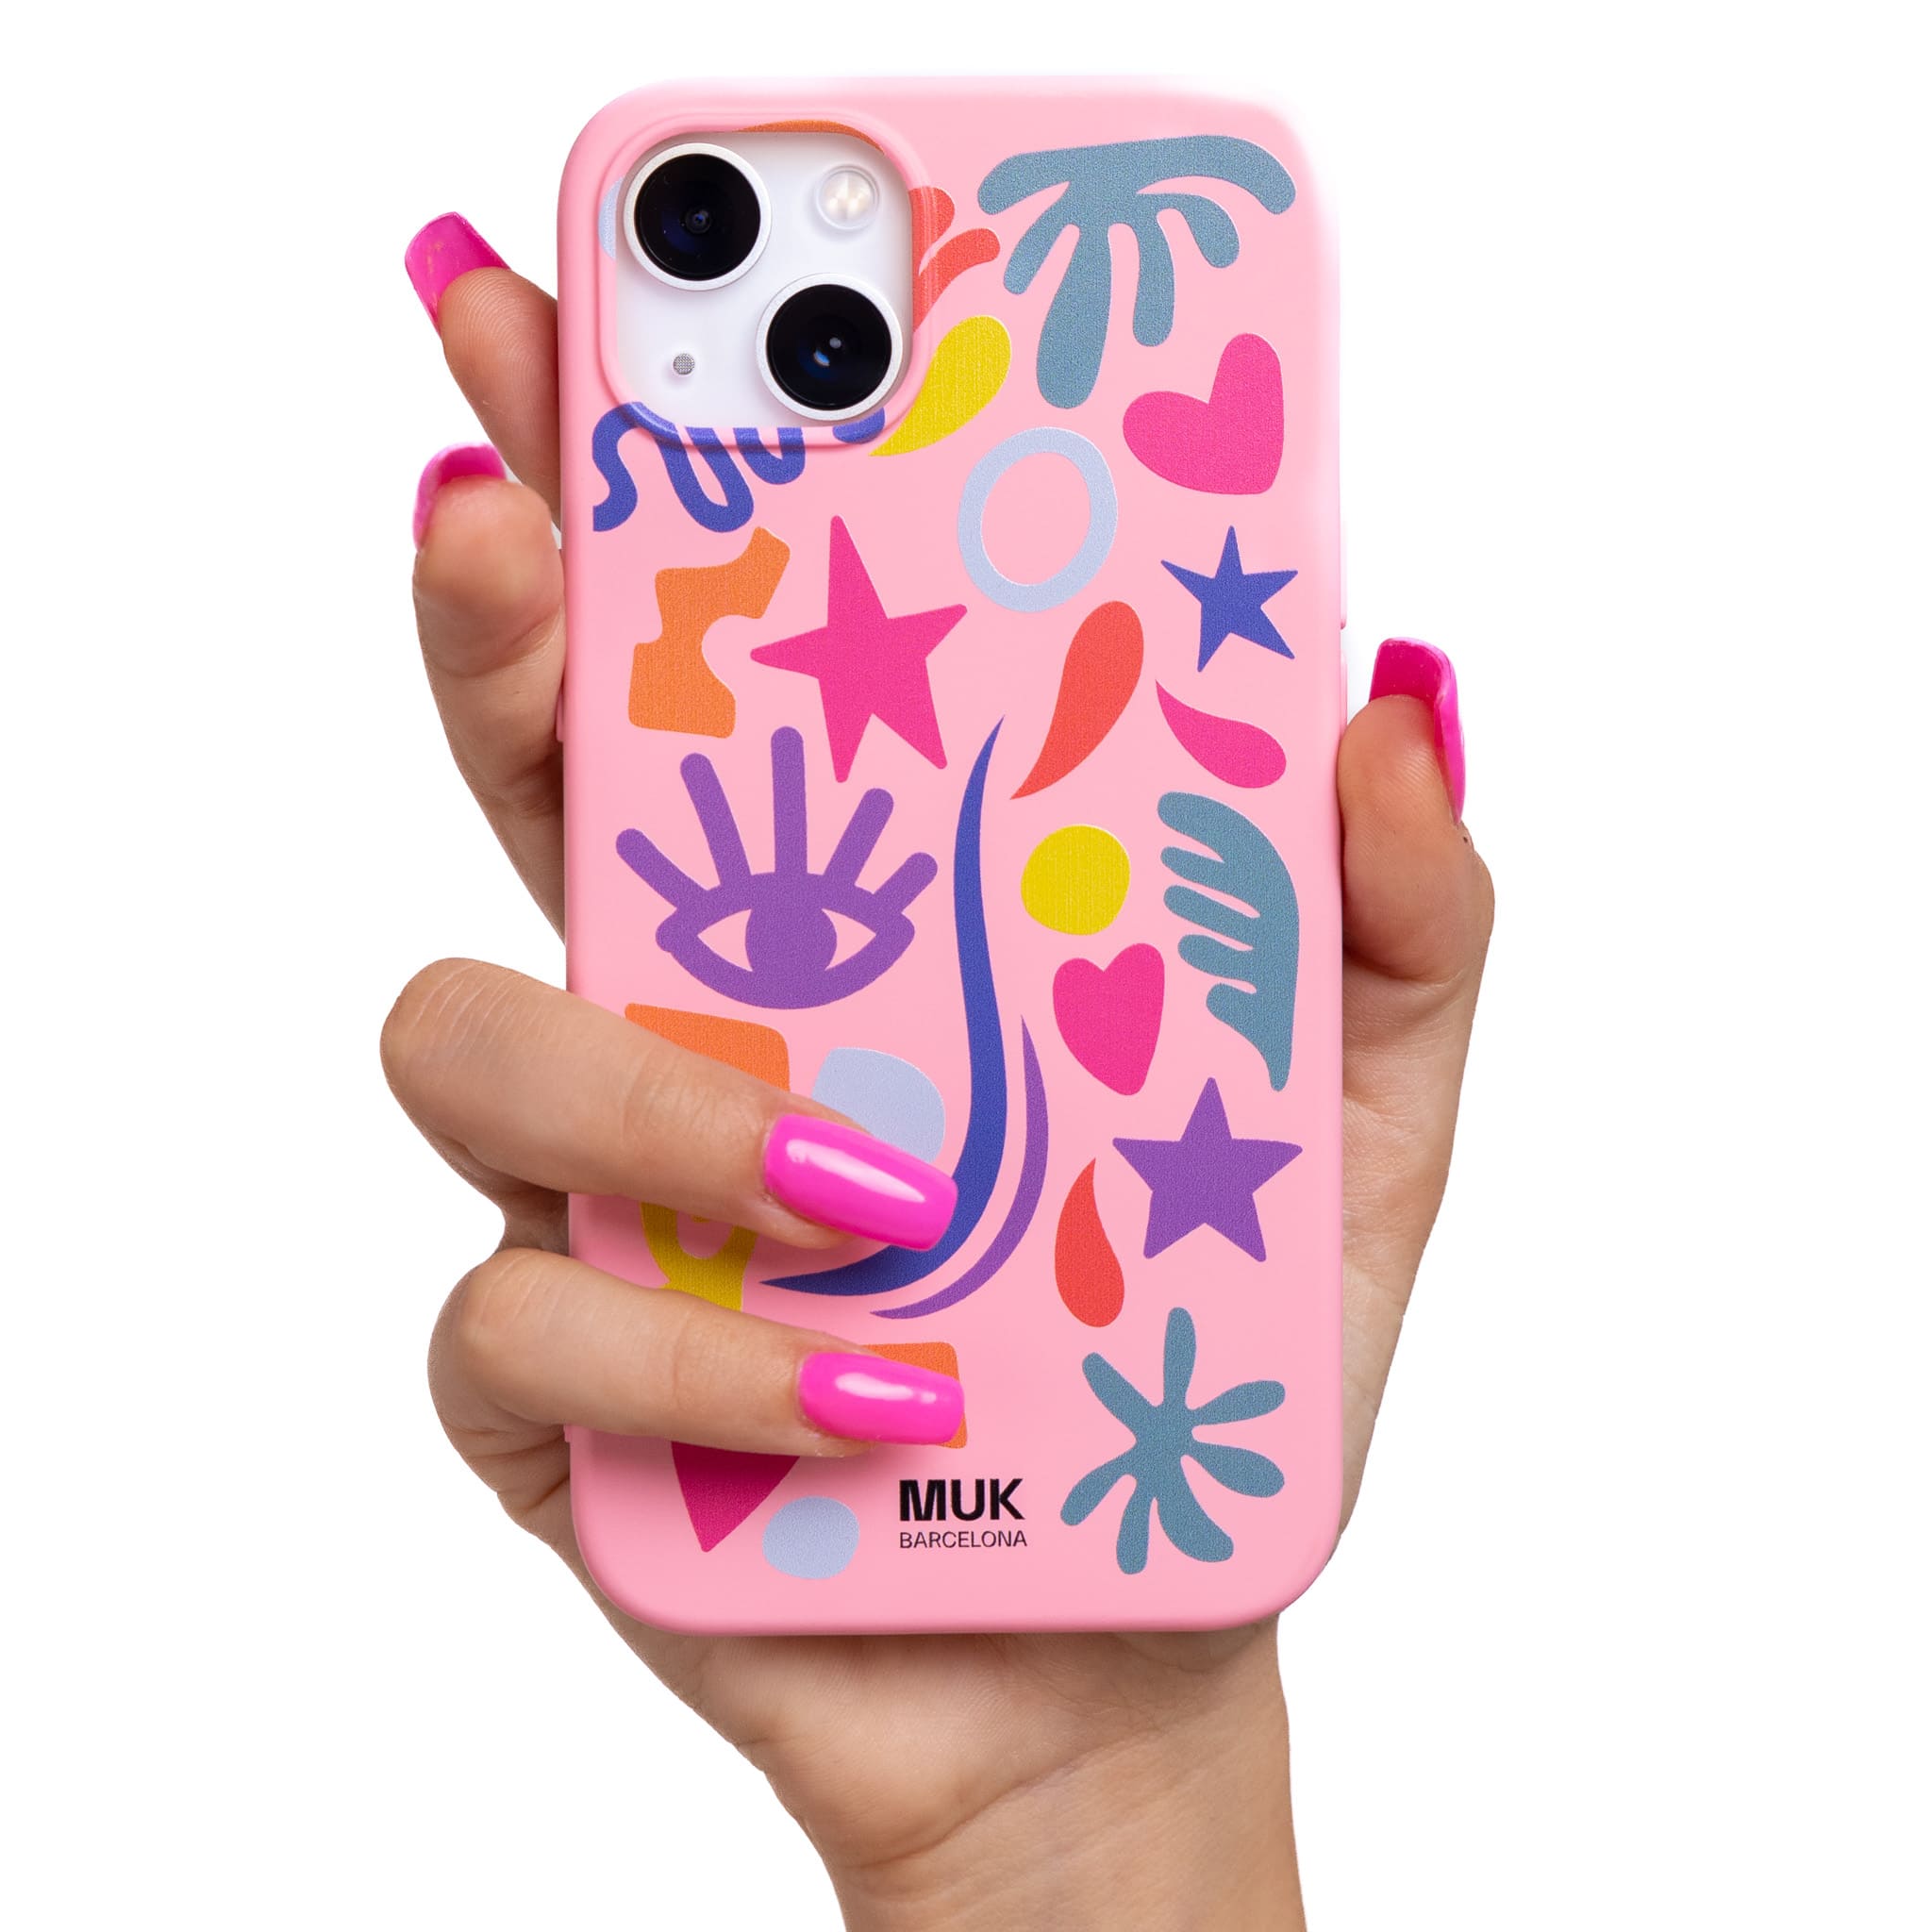 Funda de móvil TPU rosa con popurrí de dibujos en diferentes colores.
